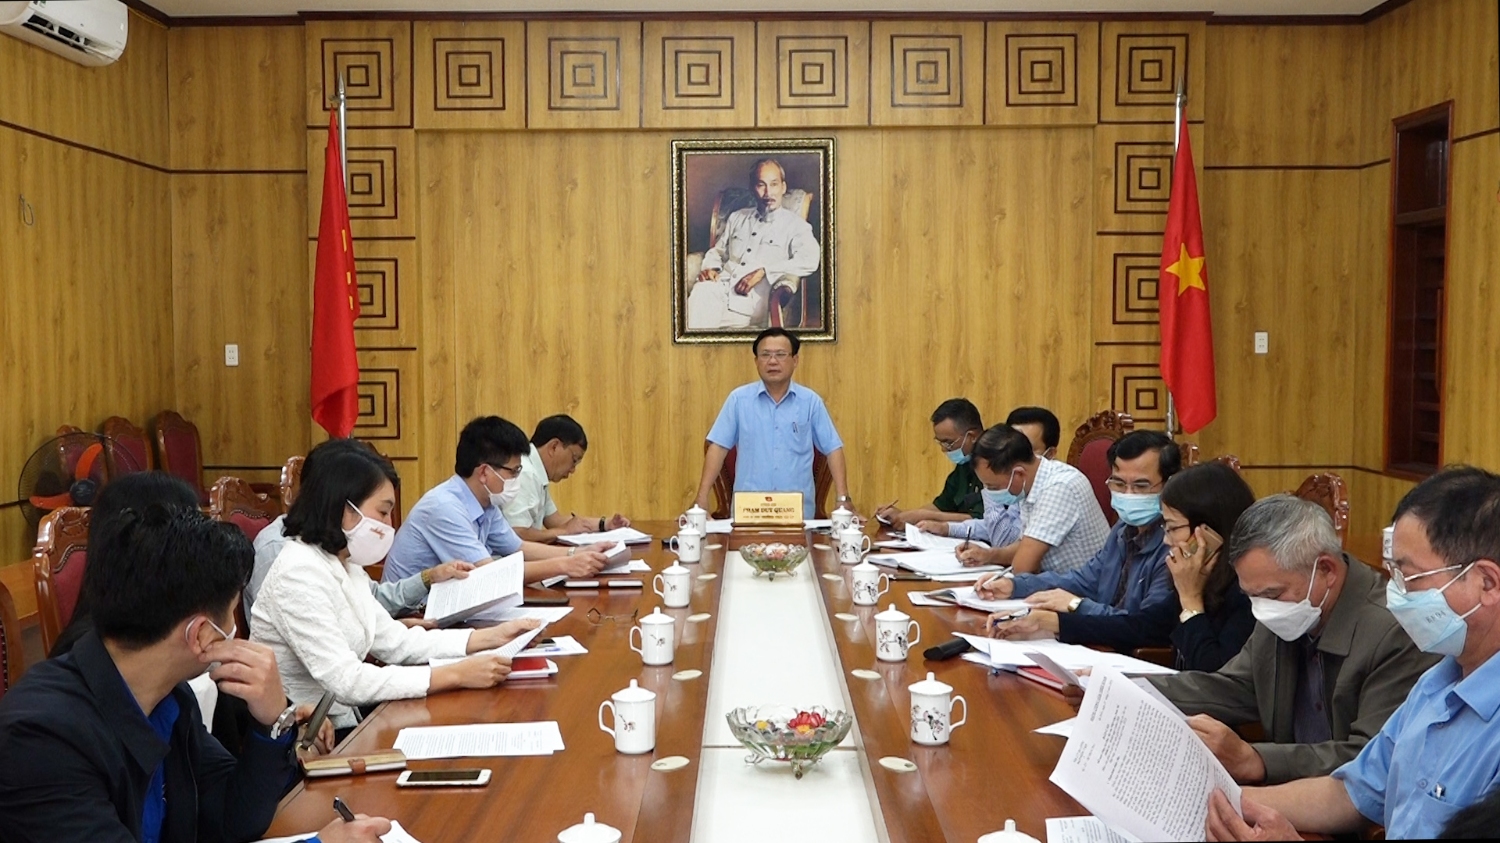 Đồng chí Phạm Duy Quang - Phó Bí thư Thường trực Thị ủy- Chủ tịch HĐND thị xã Ba Đồn phát biểu kết luận tại hội nghị giao ban.